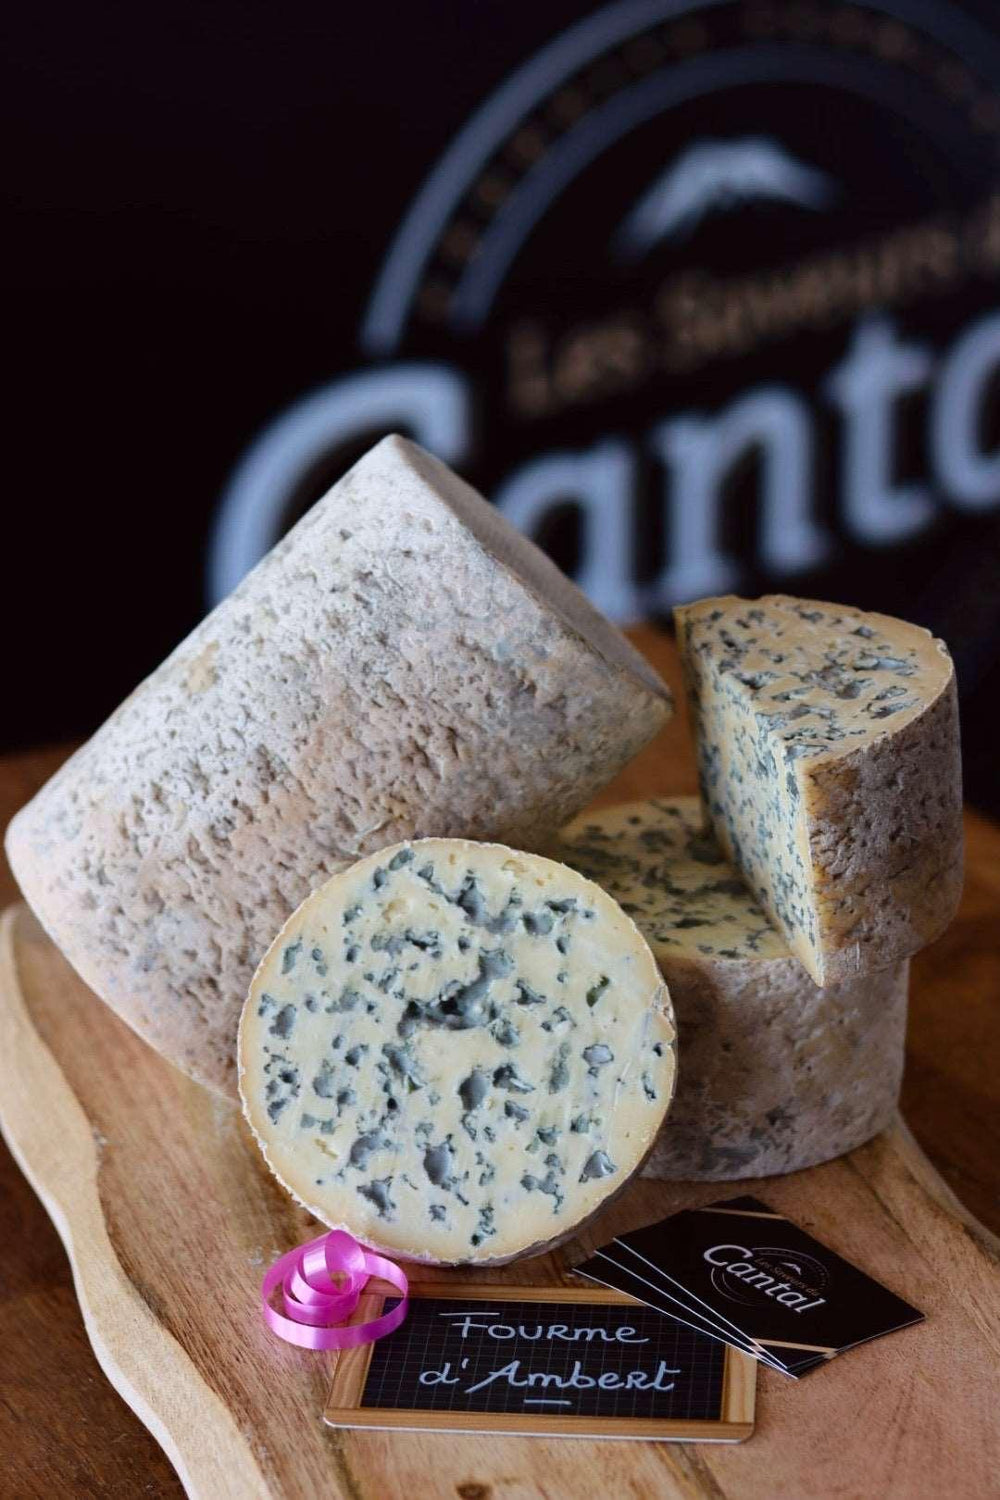 La Fourme d'Ambert est un fromage au lait de vache originaire de la région Auvergne en France. Sa pâte est souple et crémeuse, avec un goût doux et légèrement noisetté. Reconnaissable à sa forme cylindrique et à sa croûte fleurie naturelle, la Fourme d'Ambert est un fromage de caractère qui accompagne parfaitement les salades, les plats chauds et les apéritifs. Fabriquée selon des méthodes traditionnelles, chaque bouchée de Fourme d'Ambert est une véritable ode à la richesse culinaire de l'Auvergne.